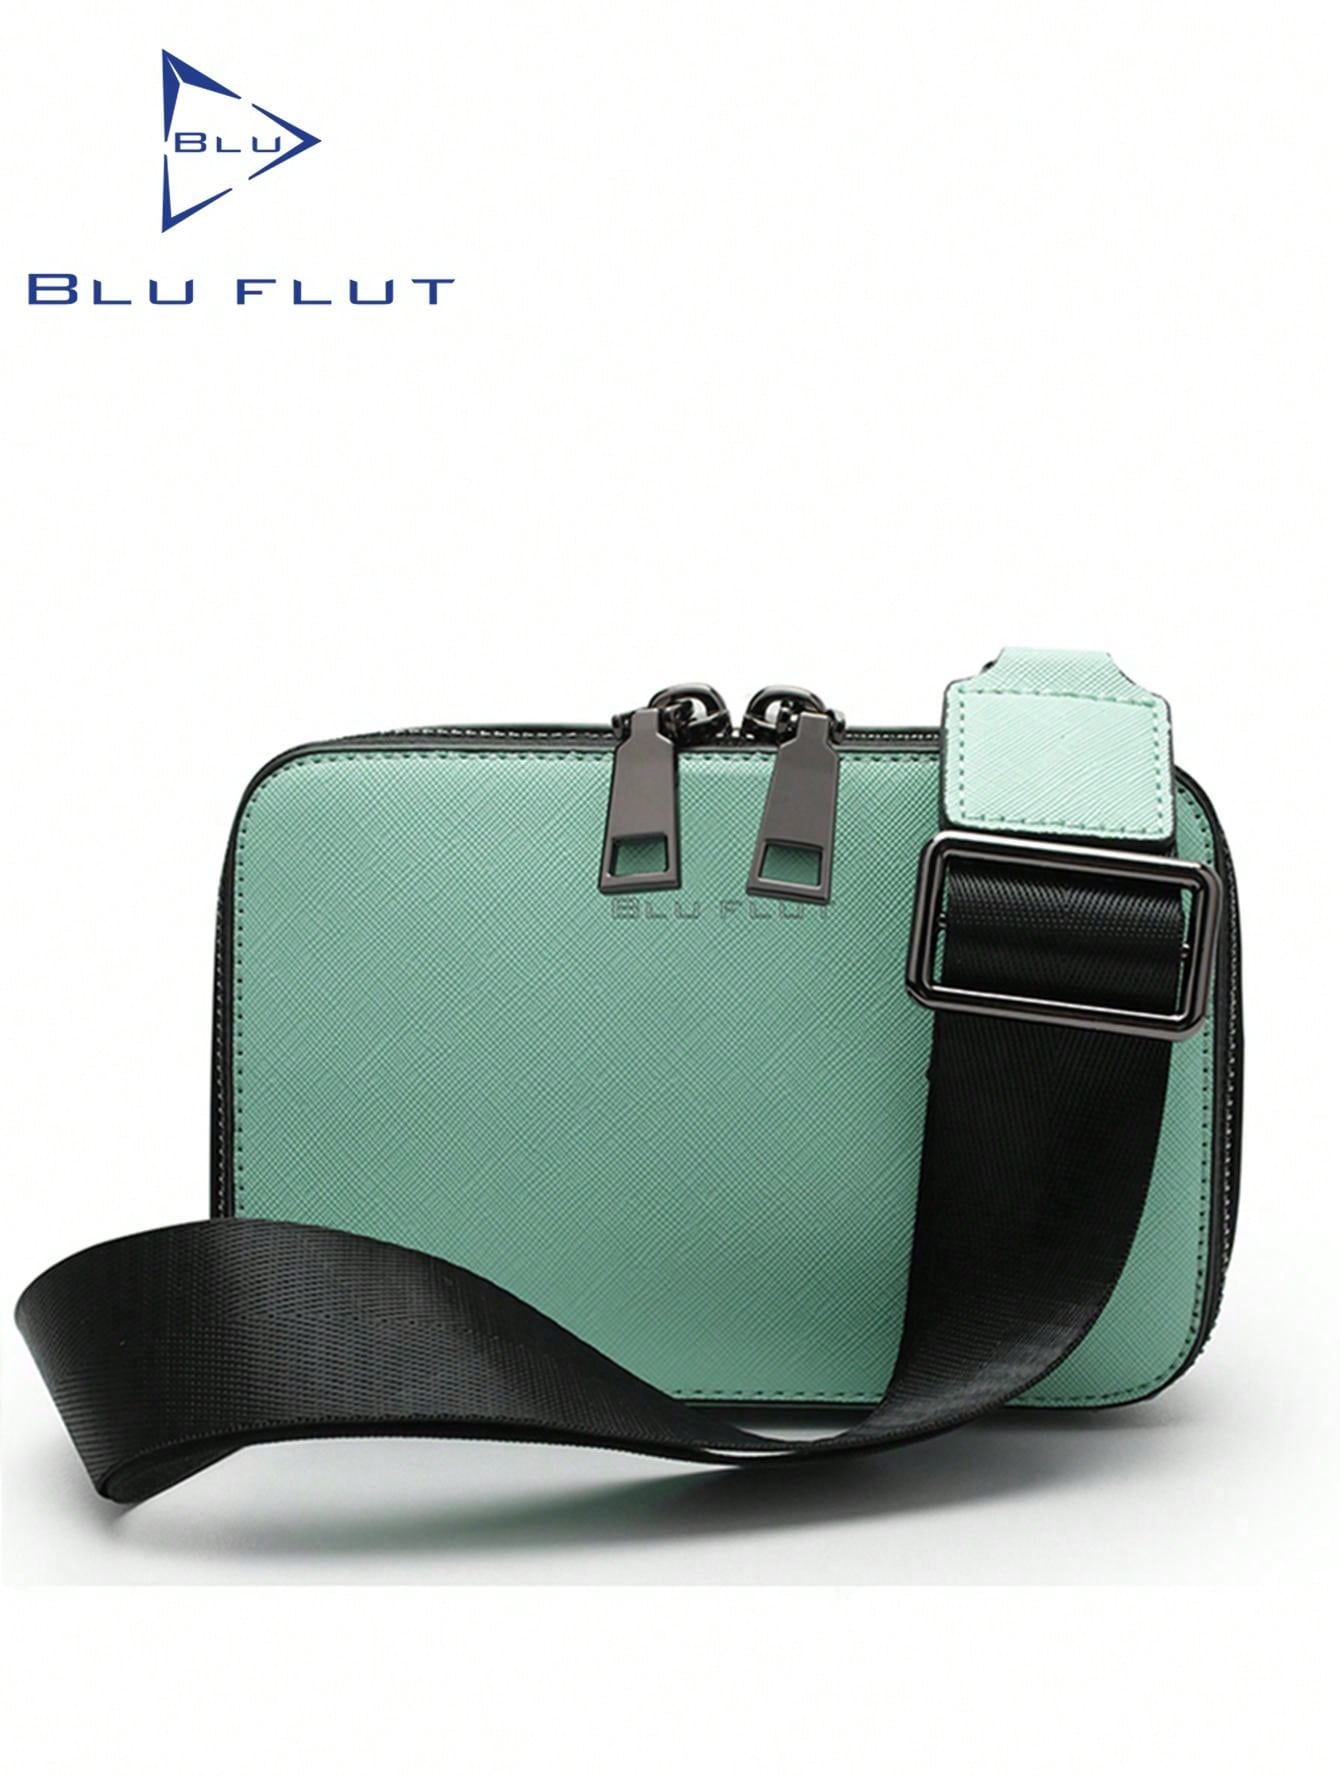 мужская нагрудная сумка через плечо вместительная сумка через плечо для пешего туризма кемпинга Сумка через плечо Blu Flut для мужчин, зеленый